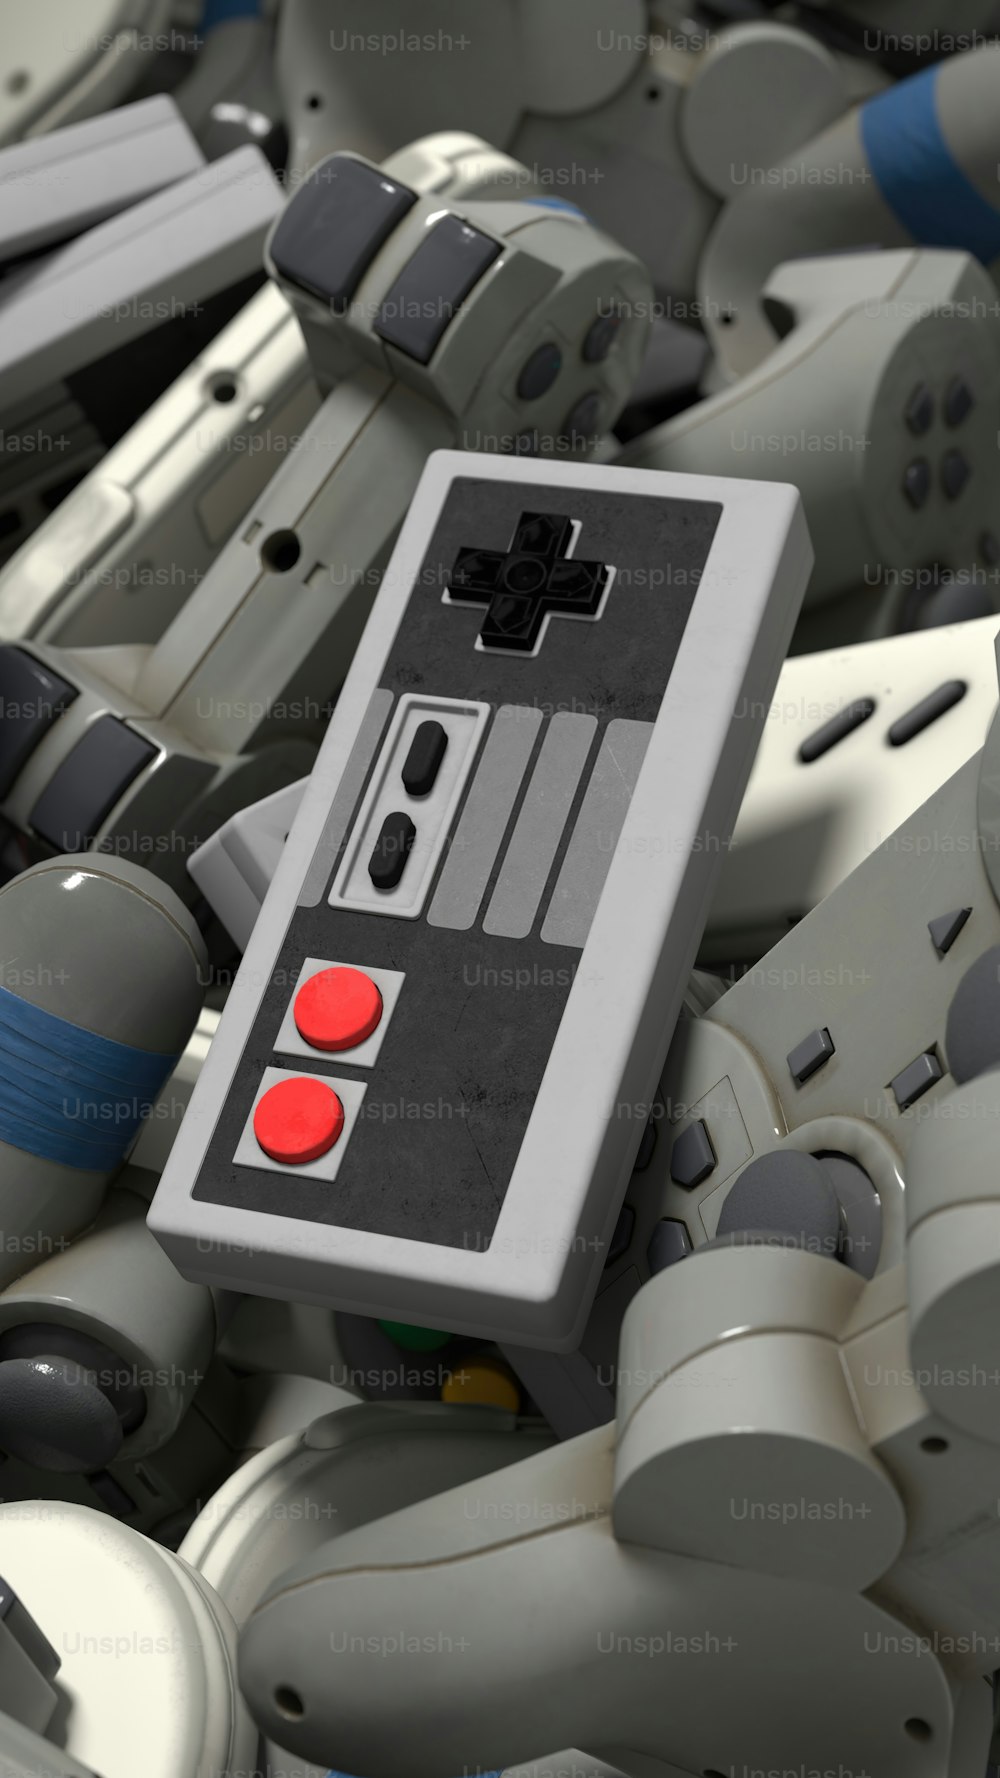 Un primo piano di un controller Nintendo circondato da altri controller Nintendo